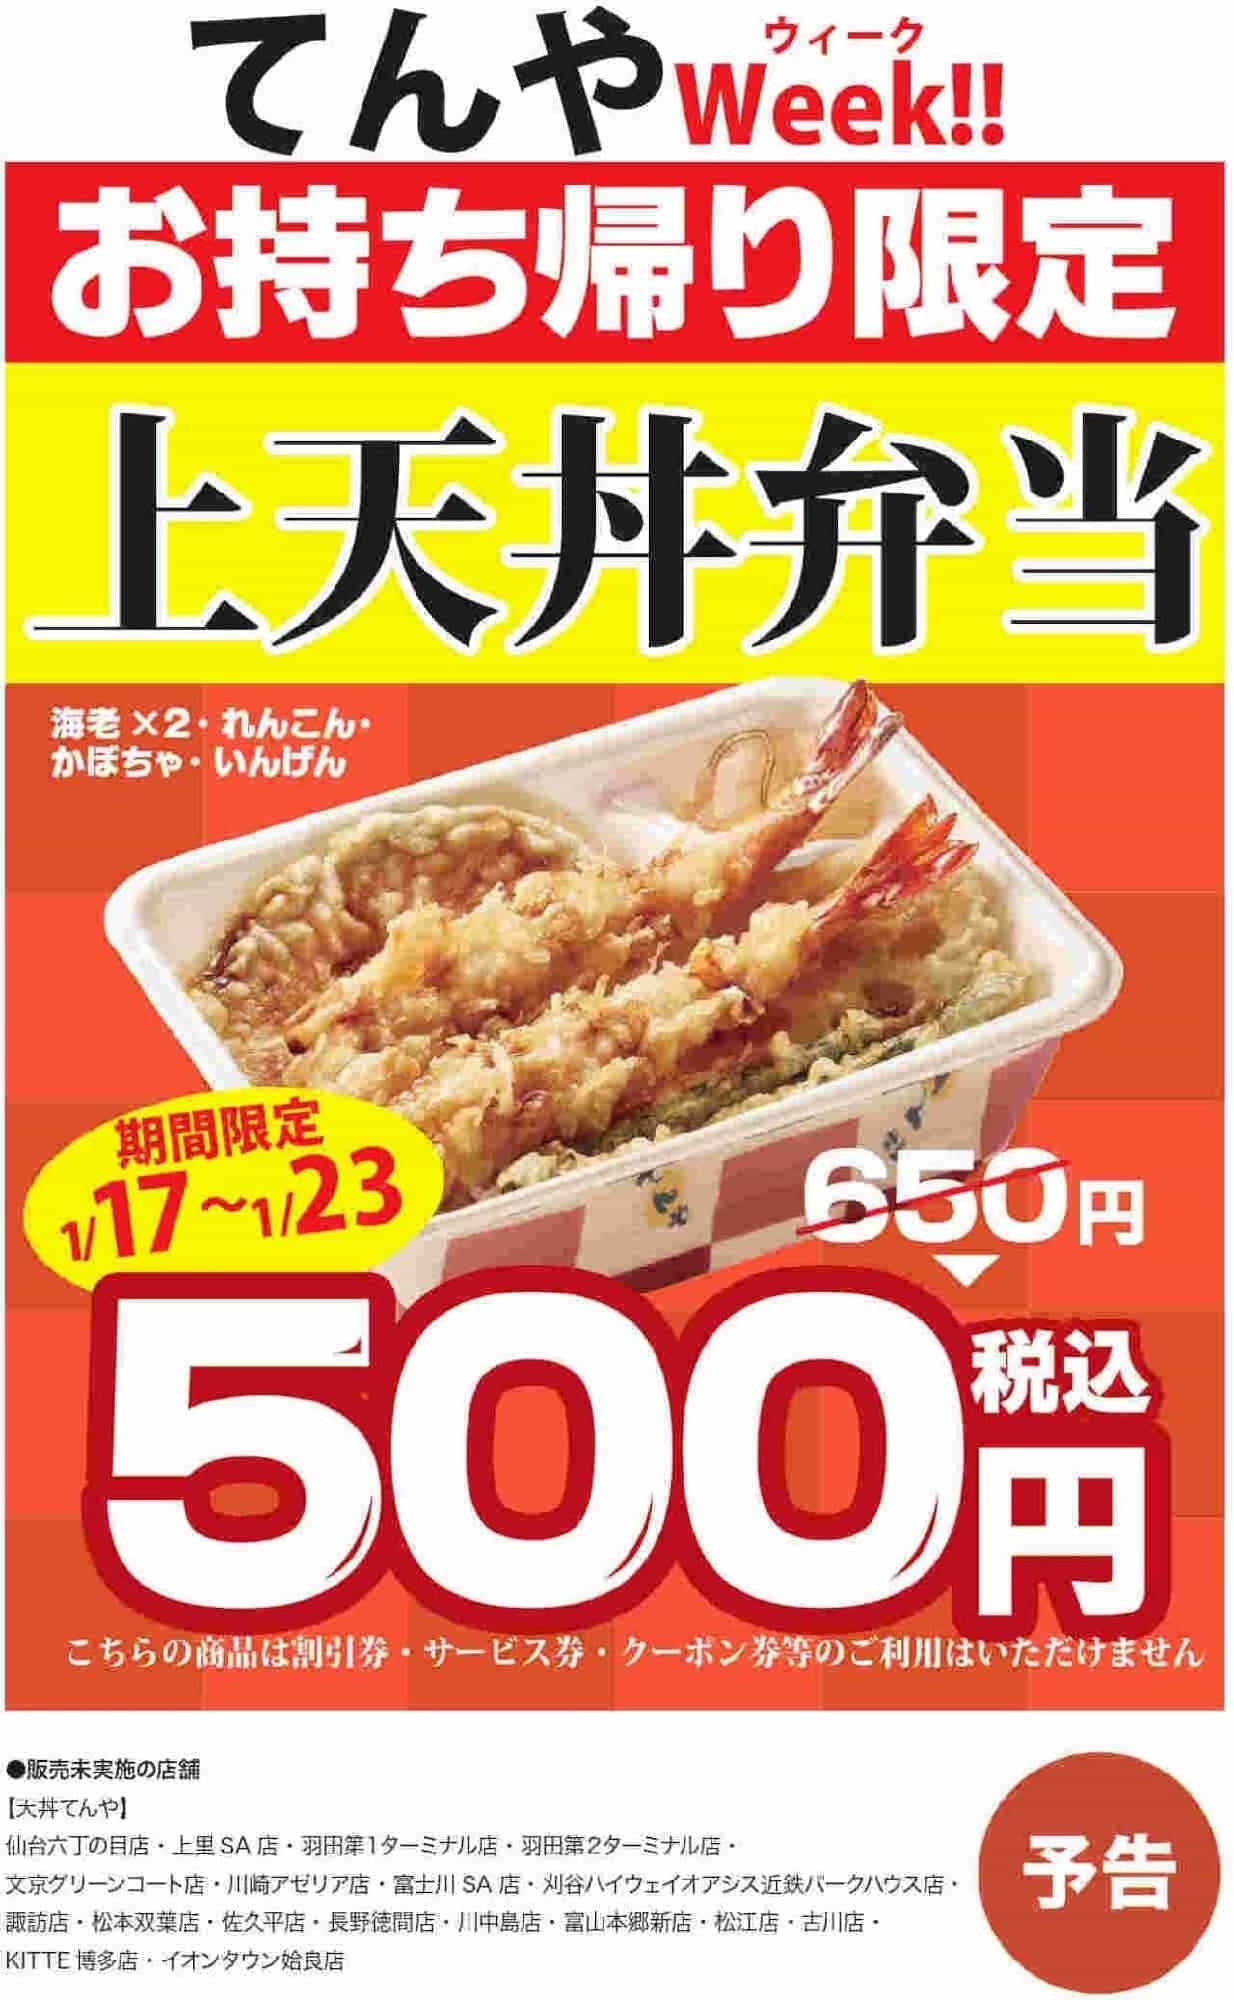 天丼てんや「上天丼弁当」が通常650円から500円になる “てんや元気応援” キャンペーン